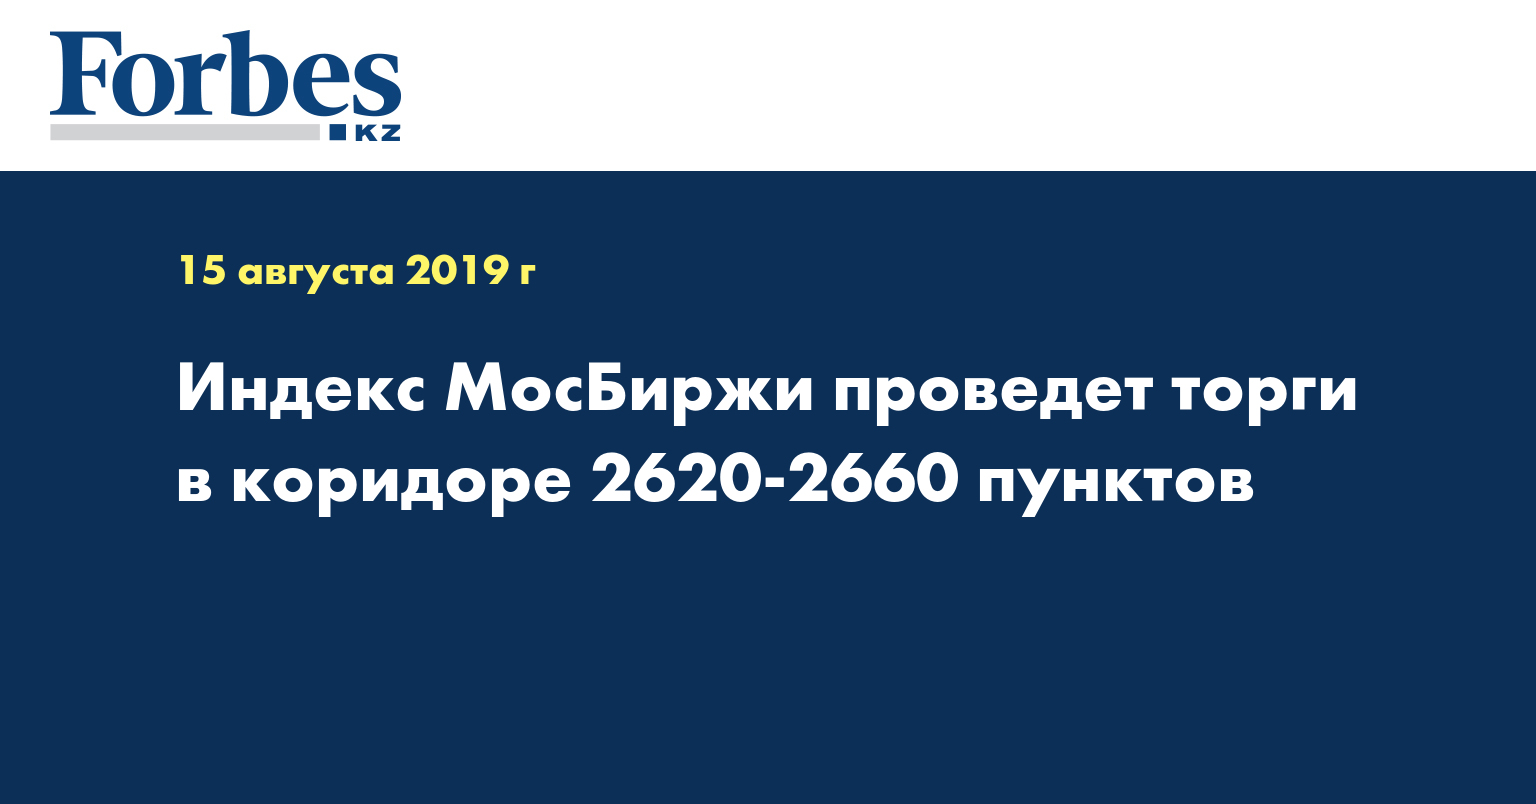 Индекс МосБиржи проведет торги в коридоре 2620-2660 пунктов